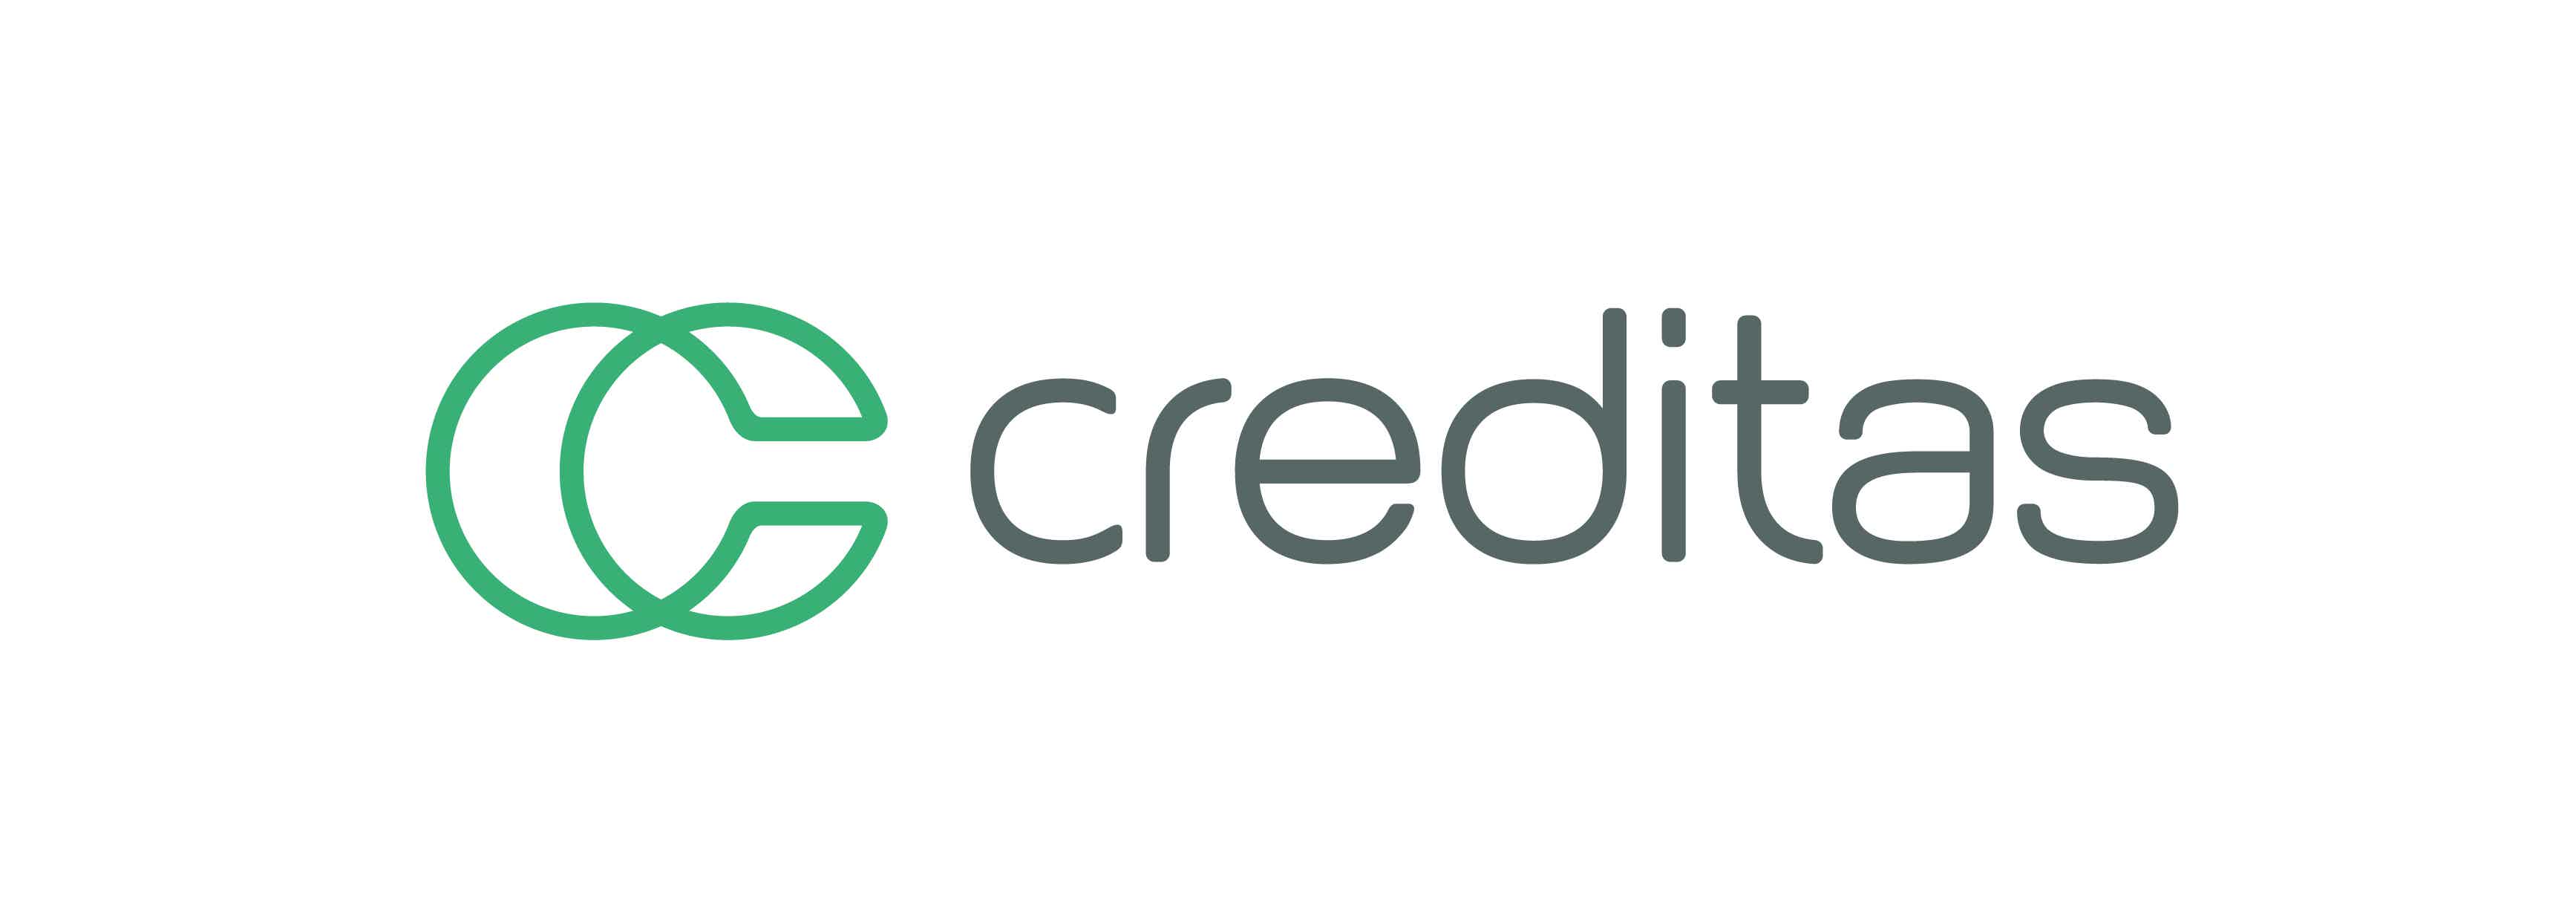 A Creditas realiza empréstimos com bens em garantia. Fonte: Creditas.